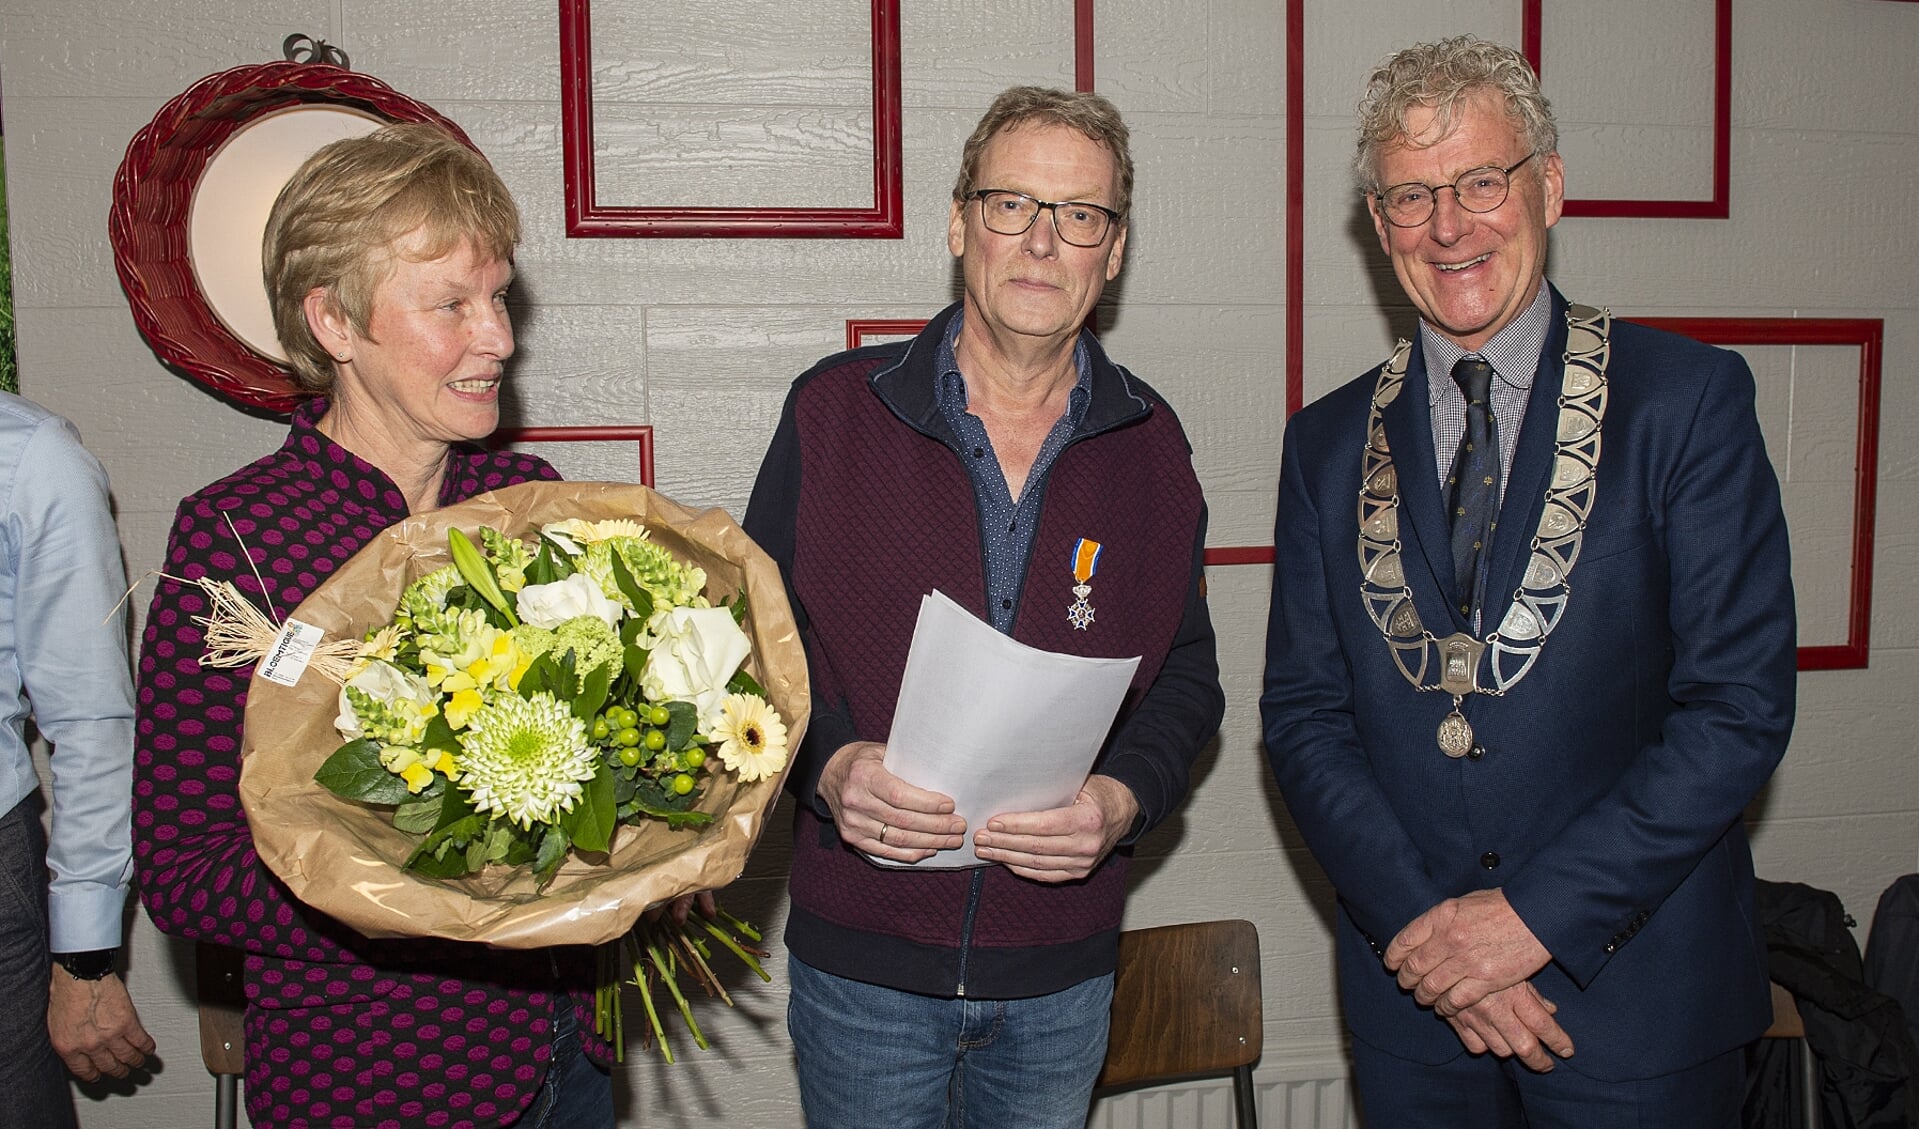 De heer Wobbe de Haan samen met zijn vrouw en burgemeester Oebele Brouwer